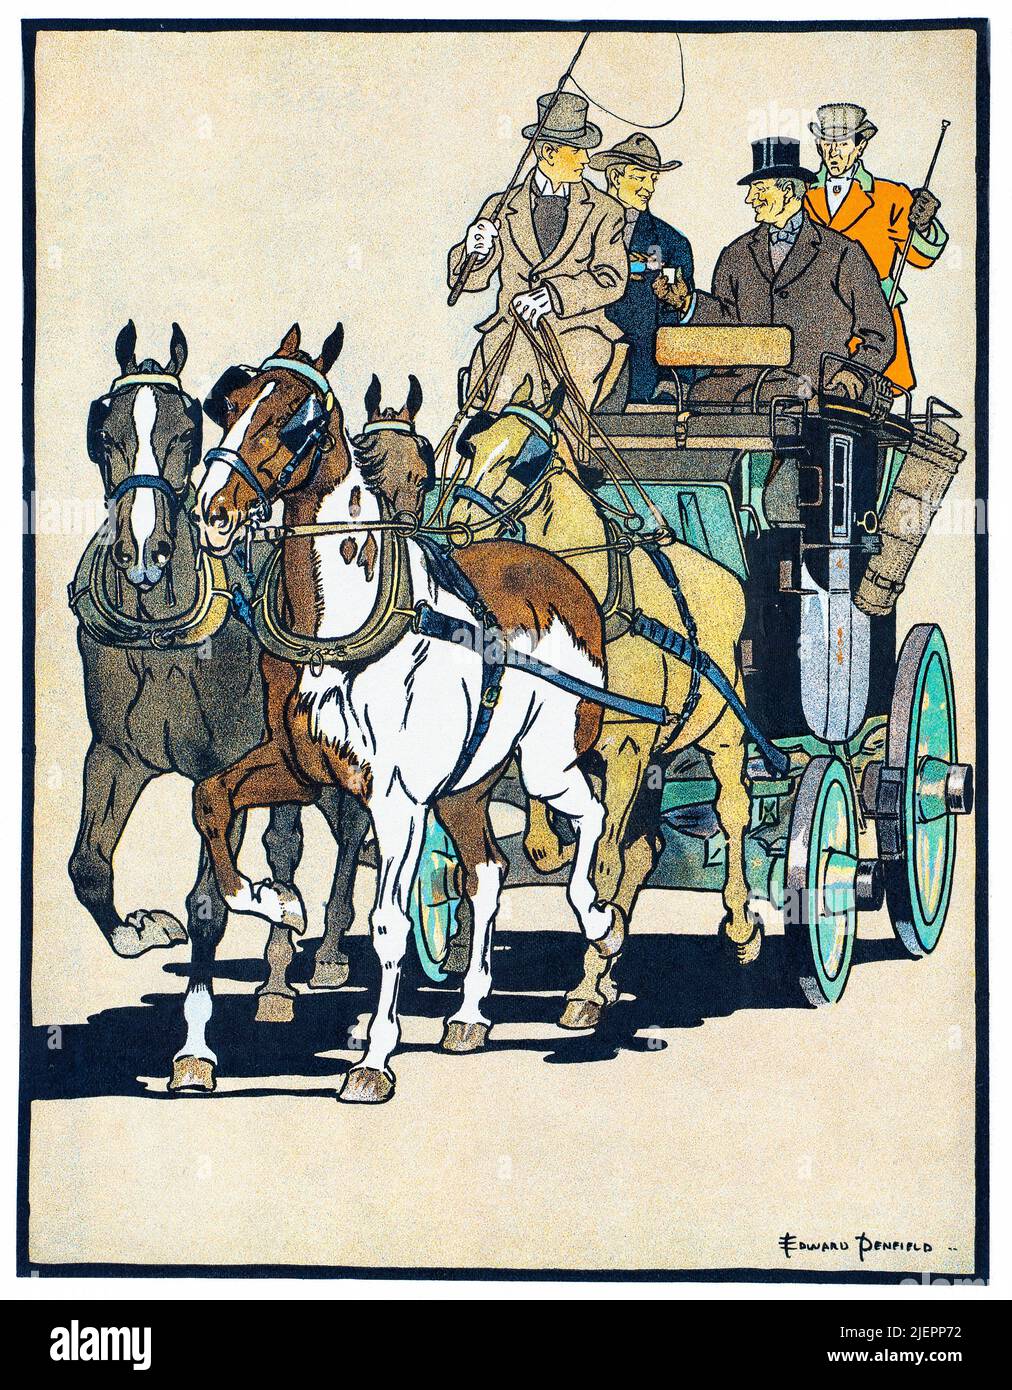 Eine amerikanische Werbeillustration des frühen 20.. Jahrhunderts von Edward Penfield (1866-1925) für John Dewer & Sons Ltd, Whisky Distillers in Perth, Schottland Stockfoto